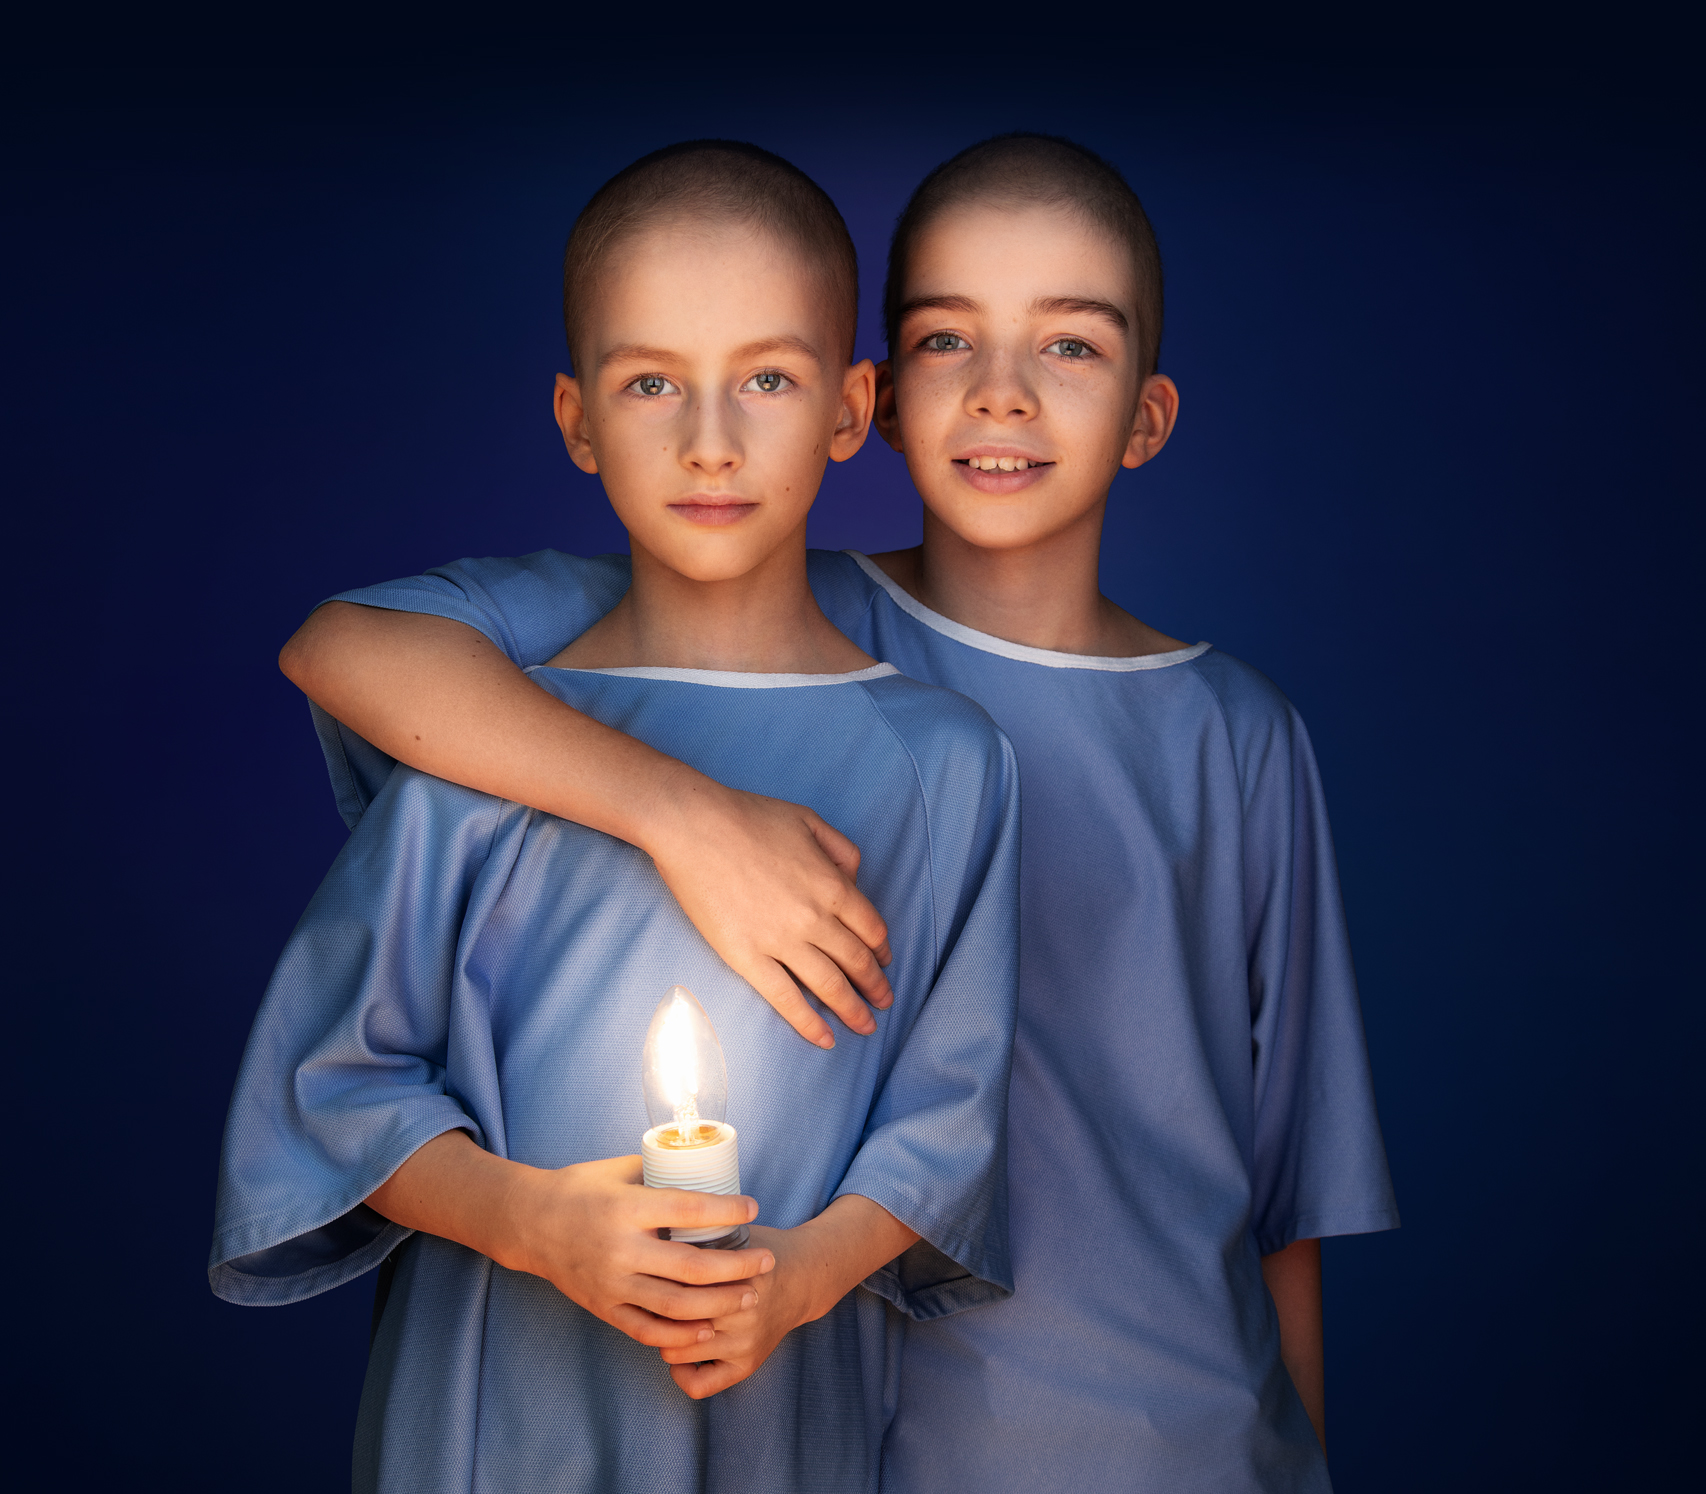 Jules et Lou, frère et sœur, sont vêtus d'une jaquette bleue, alors que Lou enlace Jules qui, lui, tient une ampoule allumée entre ses mains.